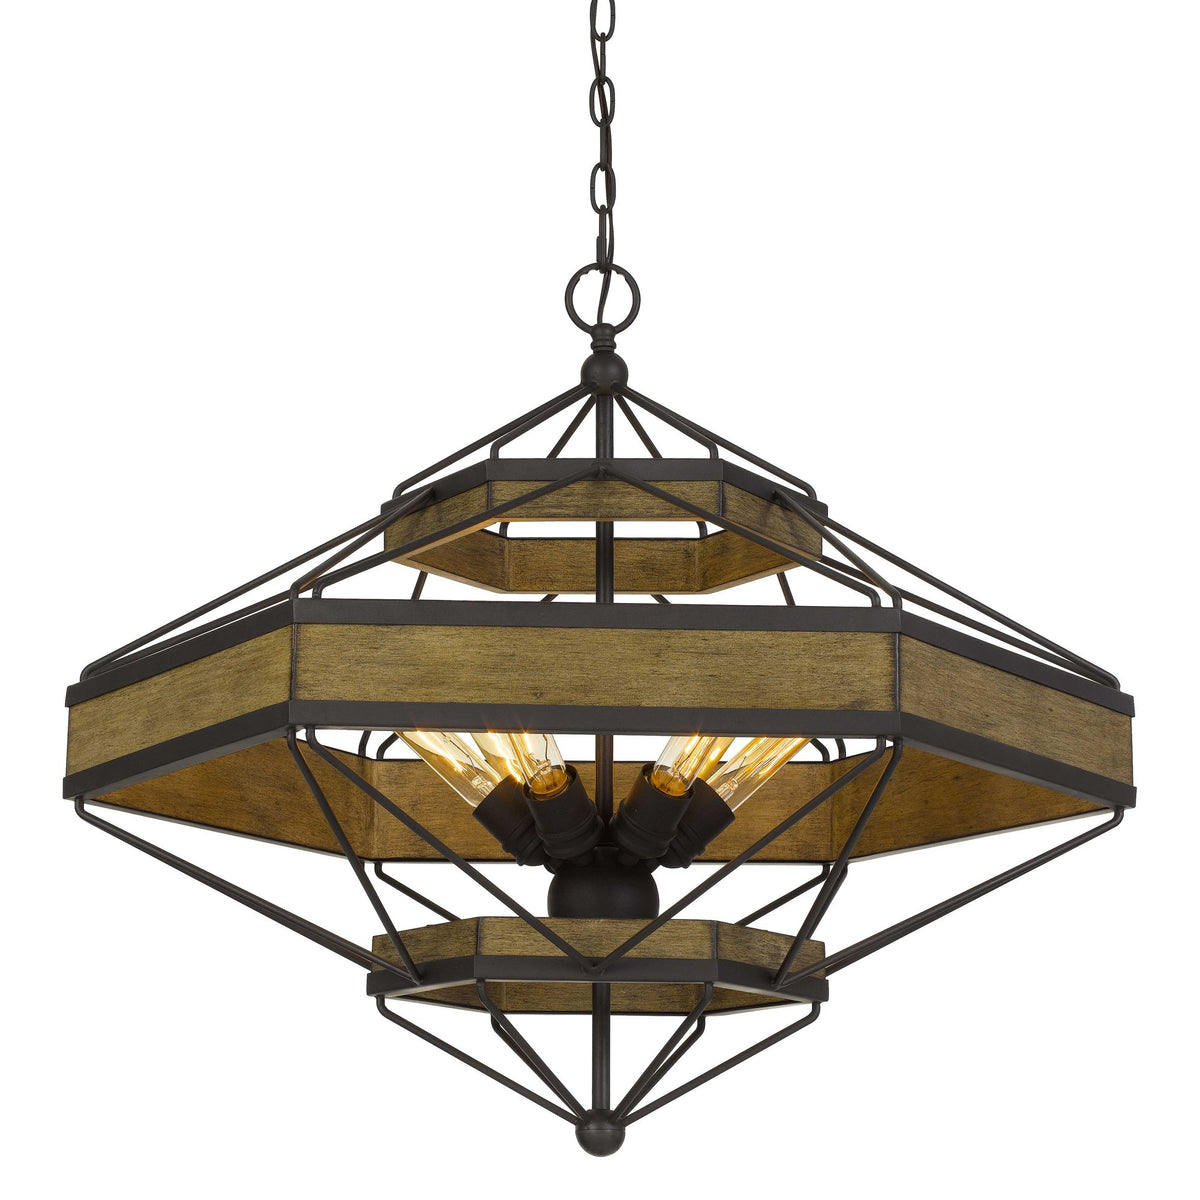 Benzara 6-Light Bronze Metal Chandelier With Brown Hexagonal Wooden Frame